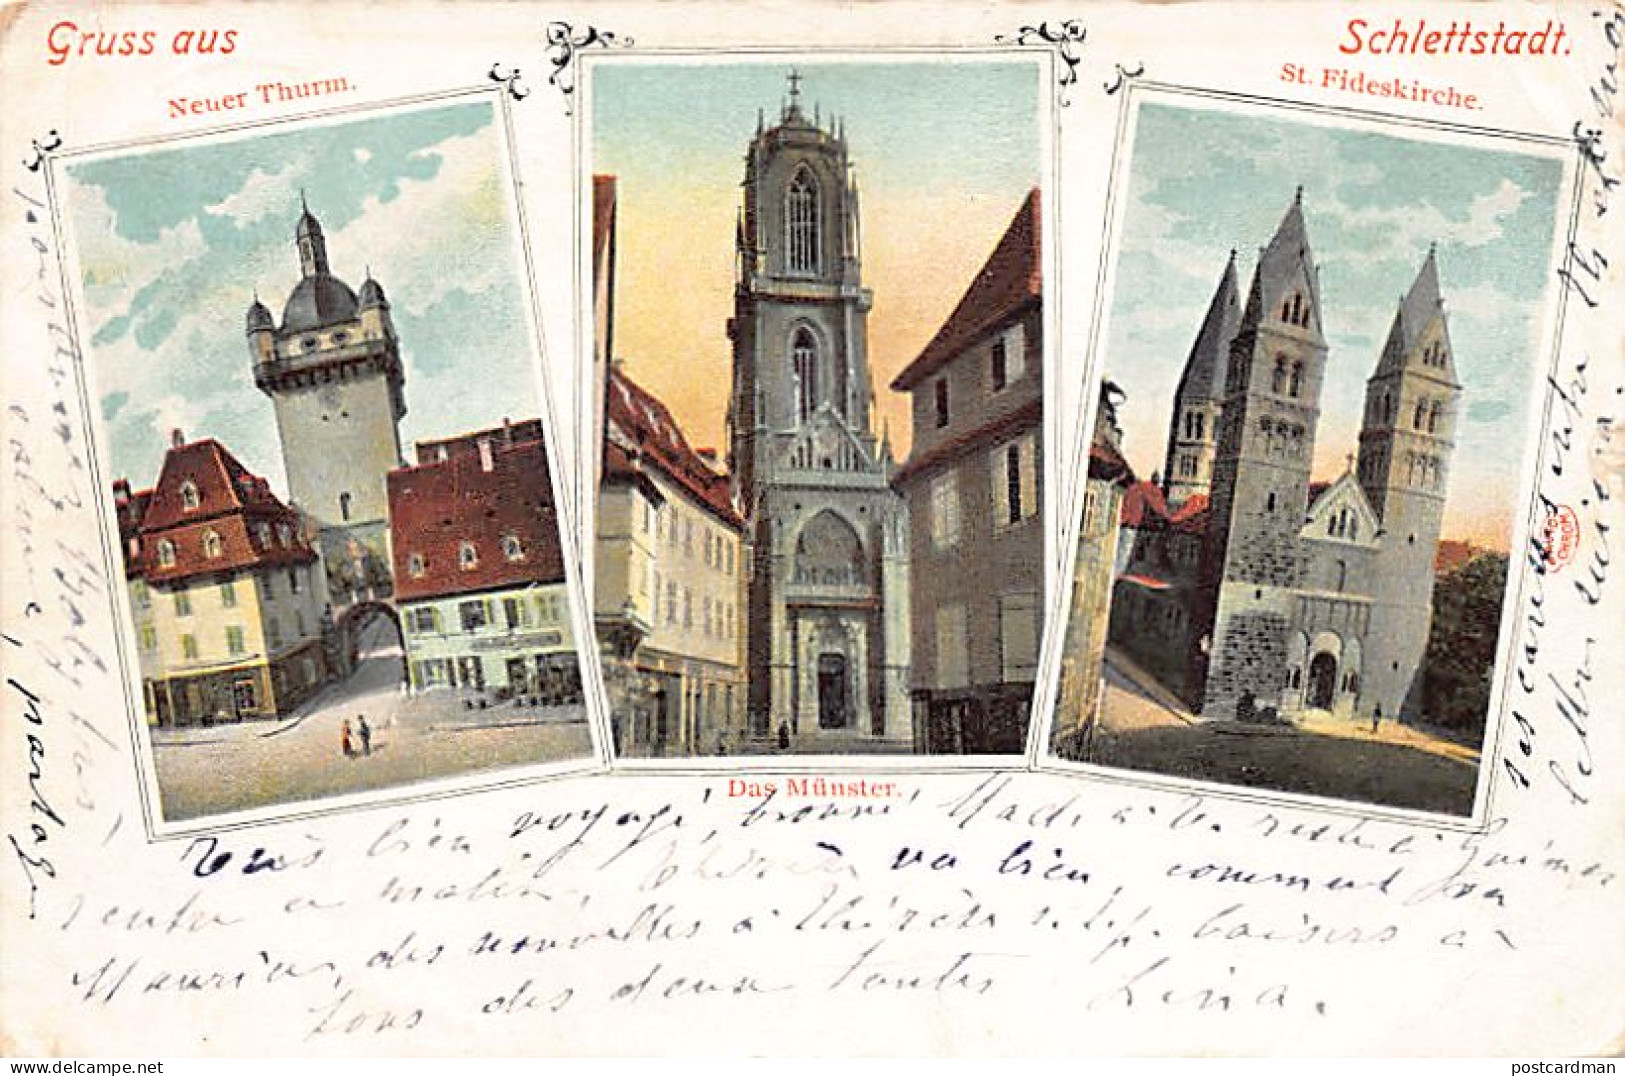 SÉLESTAT - Tour Neuve - Cathédrale - Eglise Sainte-Foy - Autochrome - Ed. ORBIS PICTUS - Selestat